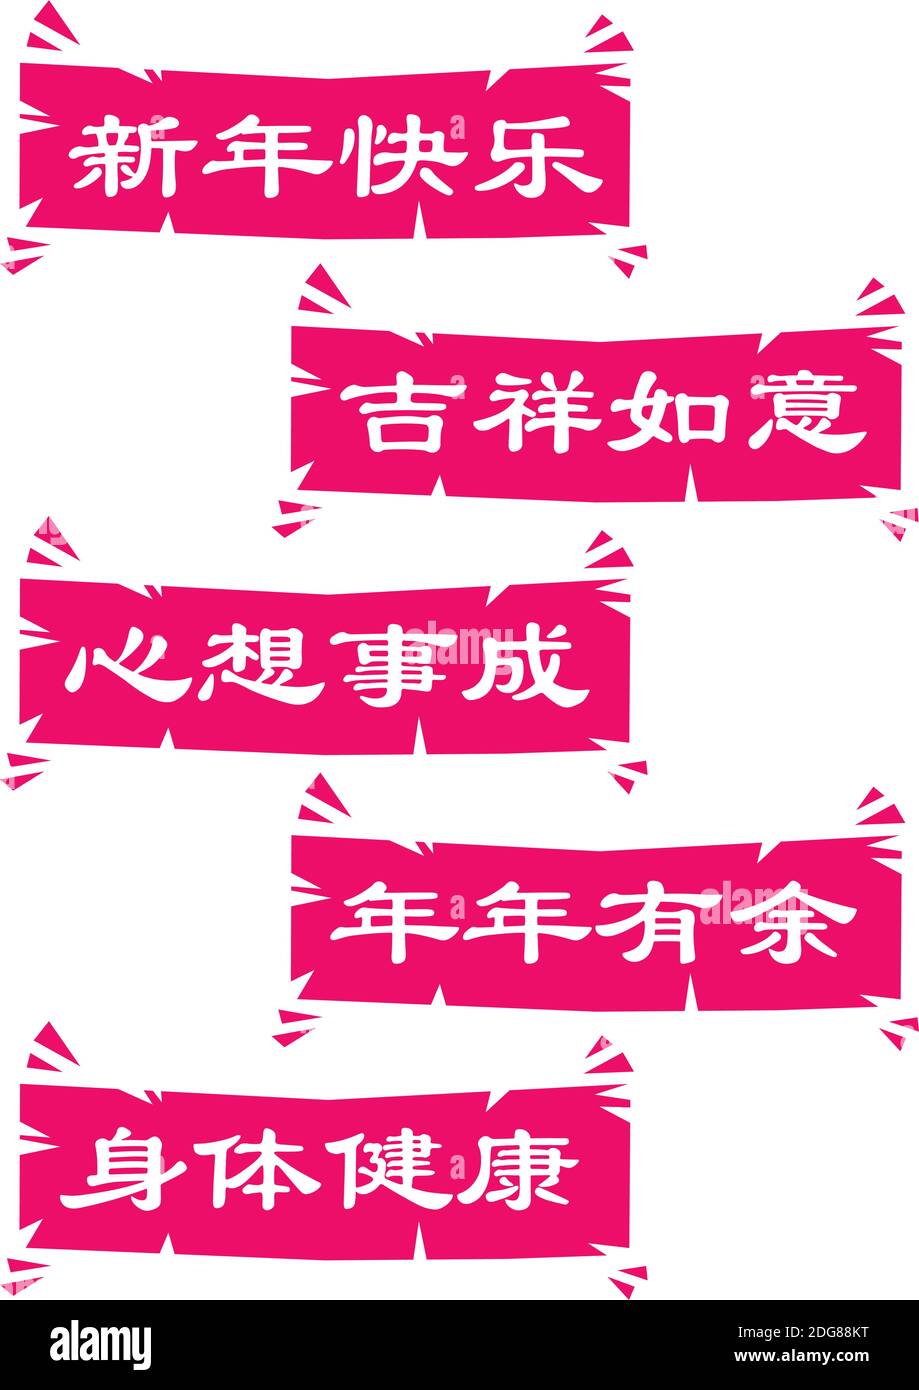 Vector Chinois nouvel an salutations rouge mannequins découpes. Le message inclut la bonne année, le succès, l'esprit, la sécurité, la prospérité et la santé. vec isolé Illustration de Vecteur